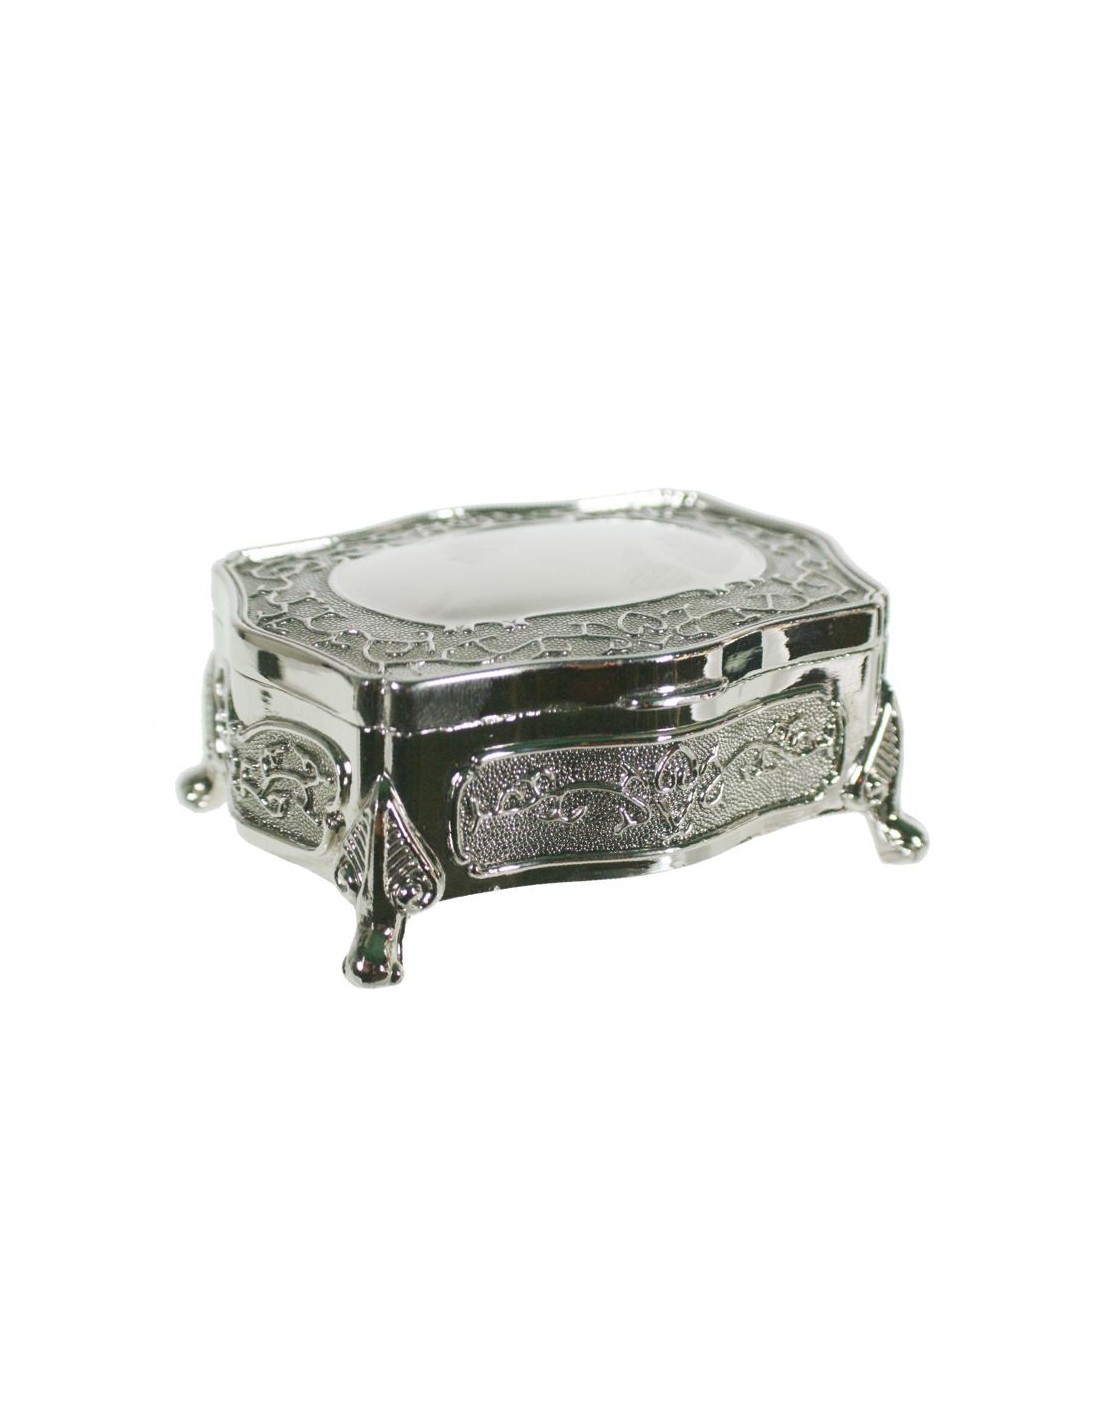 Caixa joier petita en metall polit amb adorn gravat estil vintage per tocador.